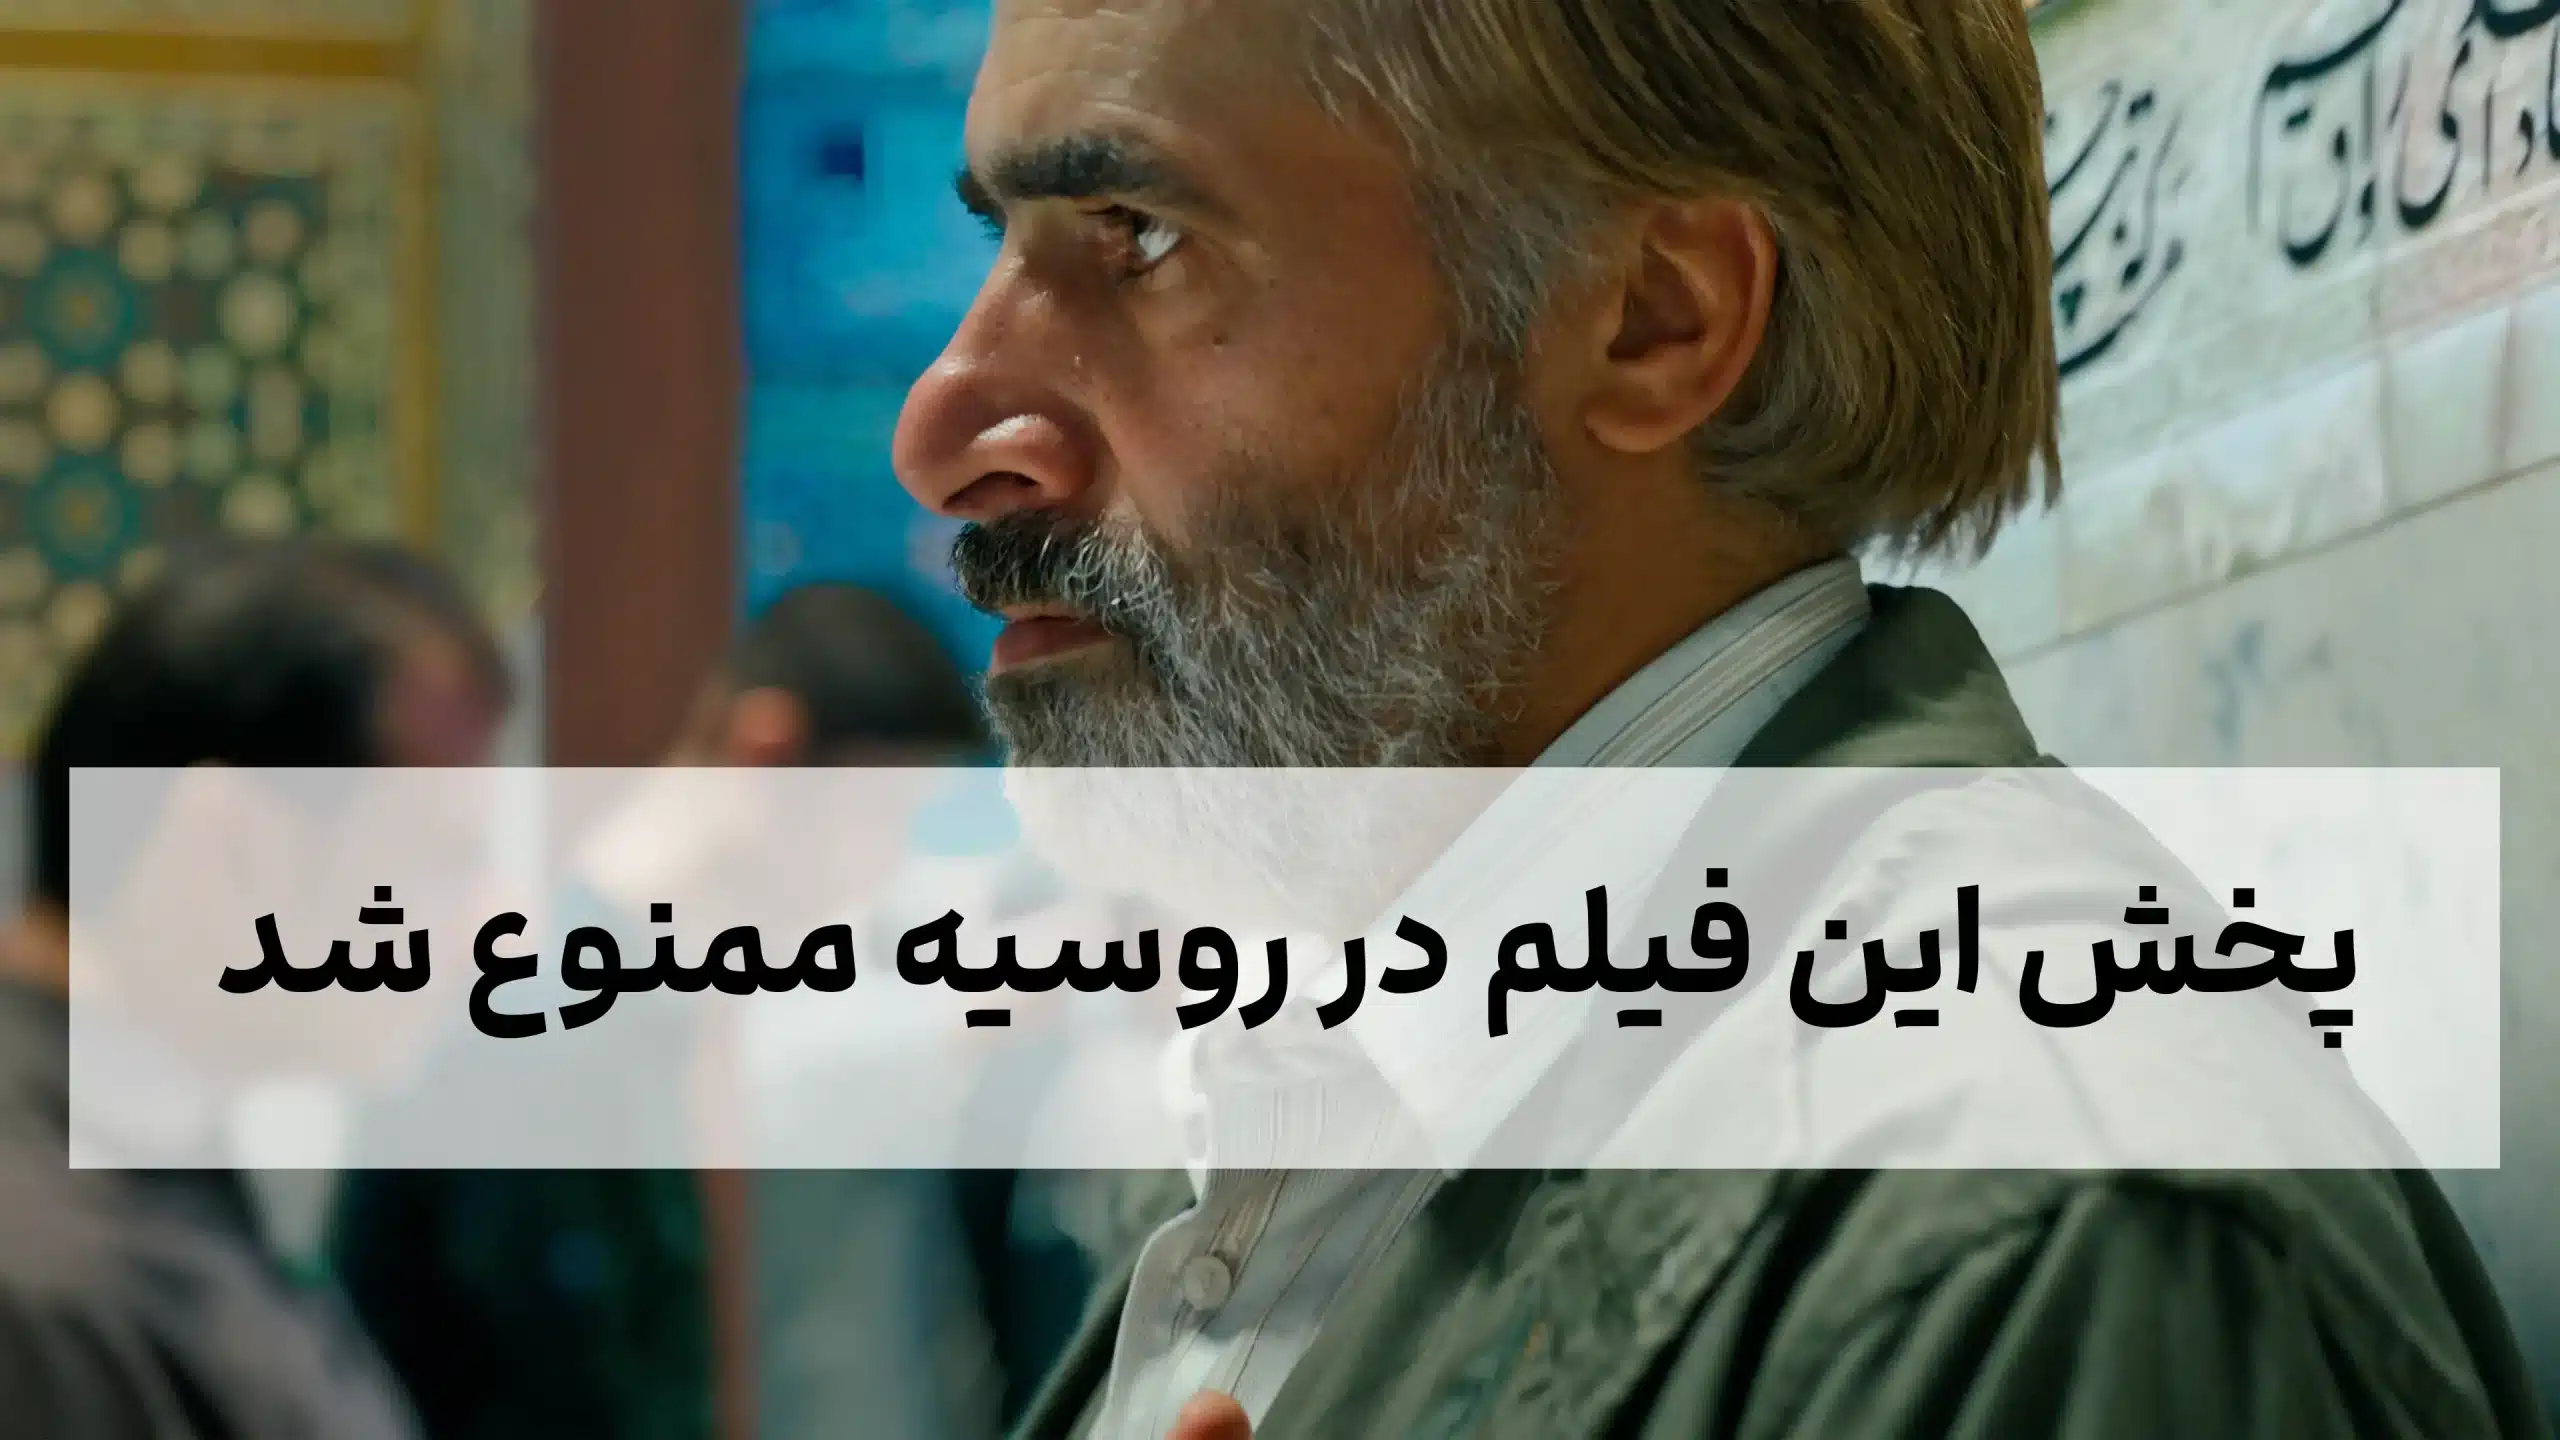 چرا پخش این فیلم ایرانی در کشور روسیه ممنوع شد؟ با بازی زهرا امیر ابراهیمی